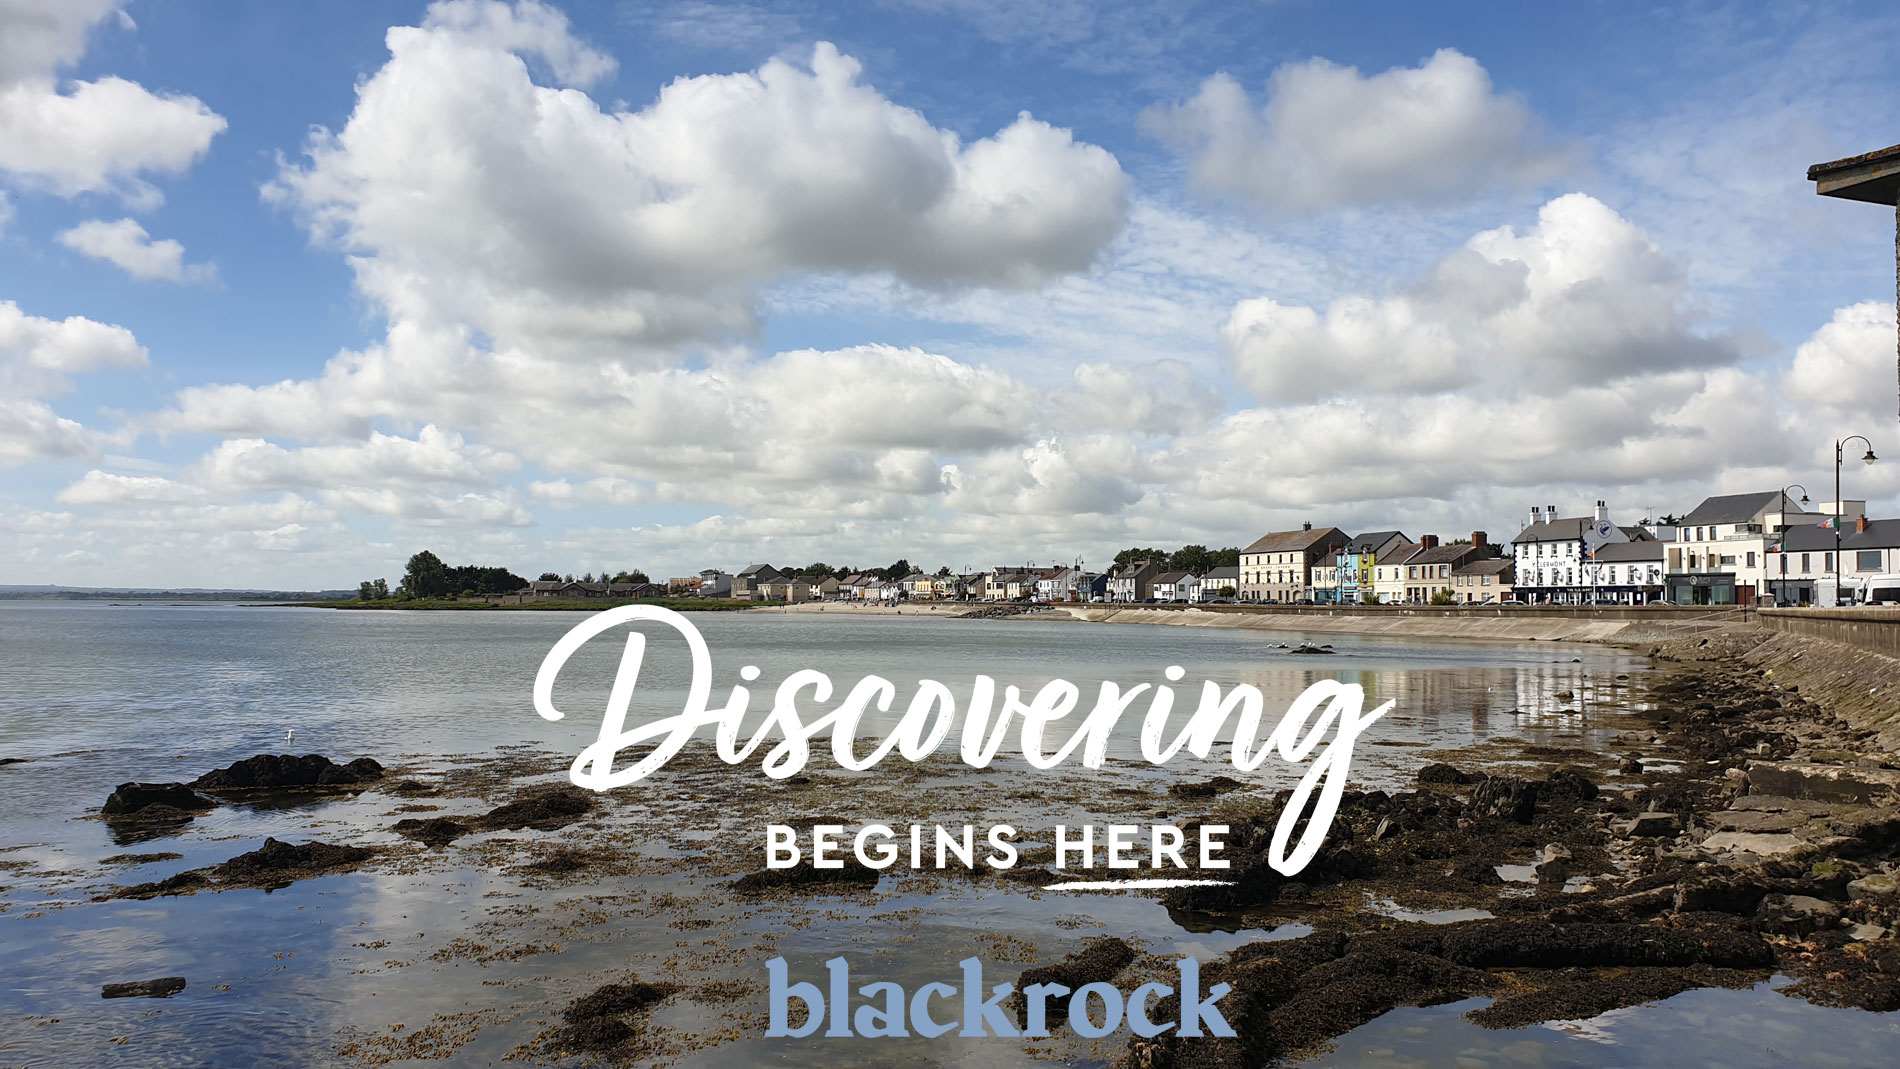 Visit Blackrock